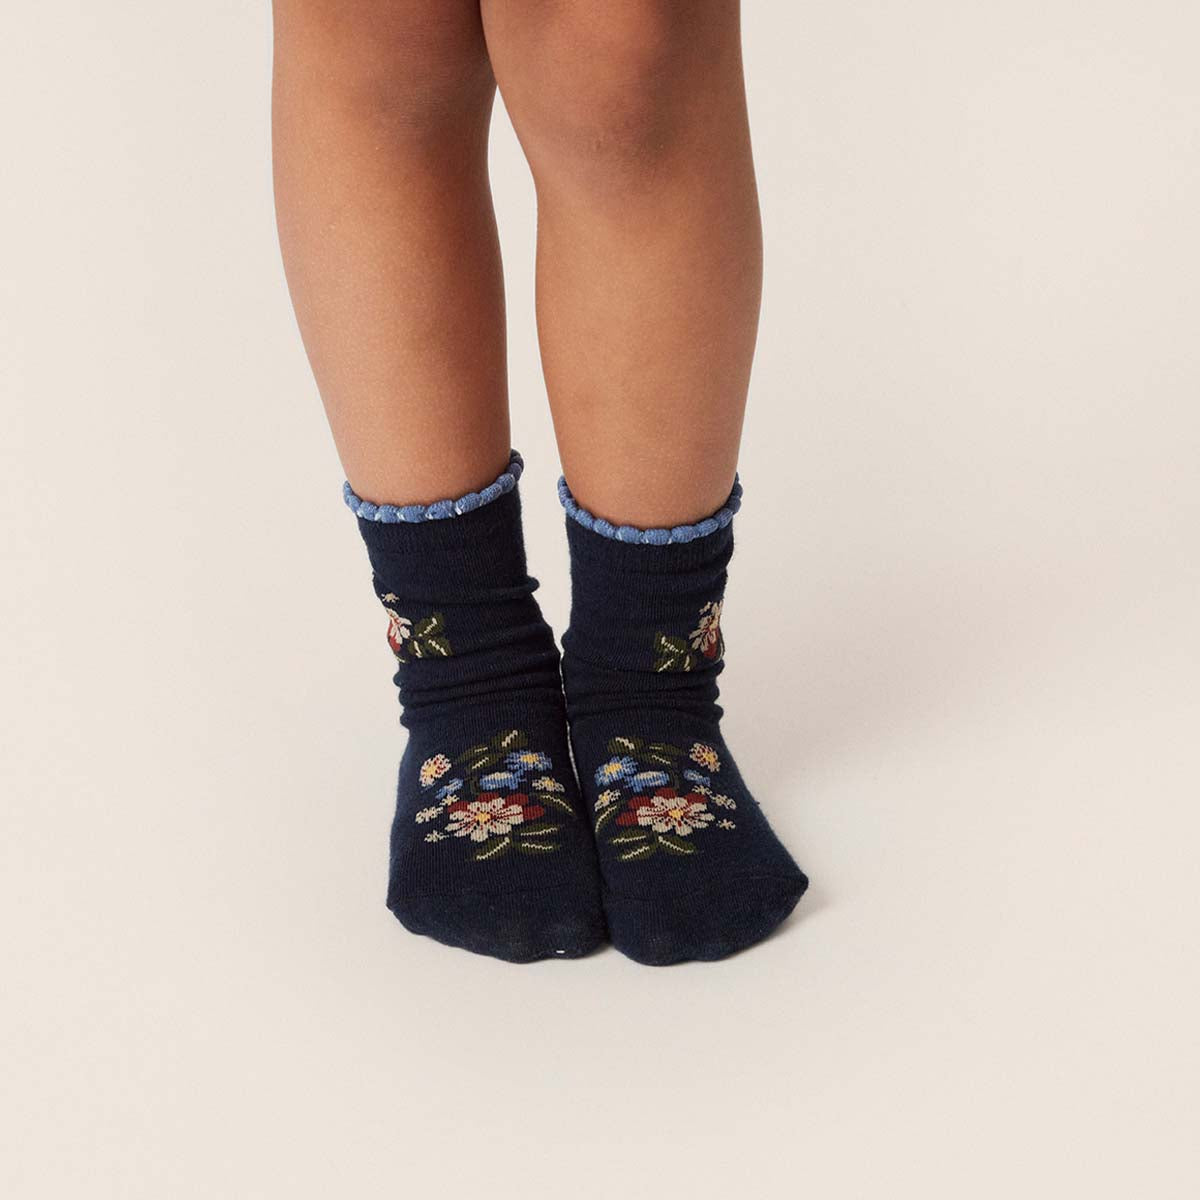 Chaussette enfant,10 paires chaussette chaude d'hiver,avec fleur et  animal,chaussette enfant en coton,pour voyage,extérieur,maison